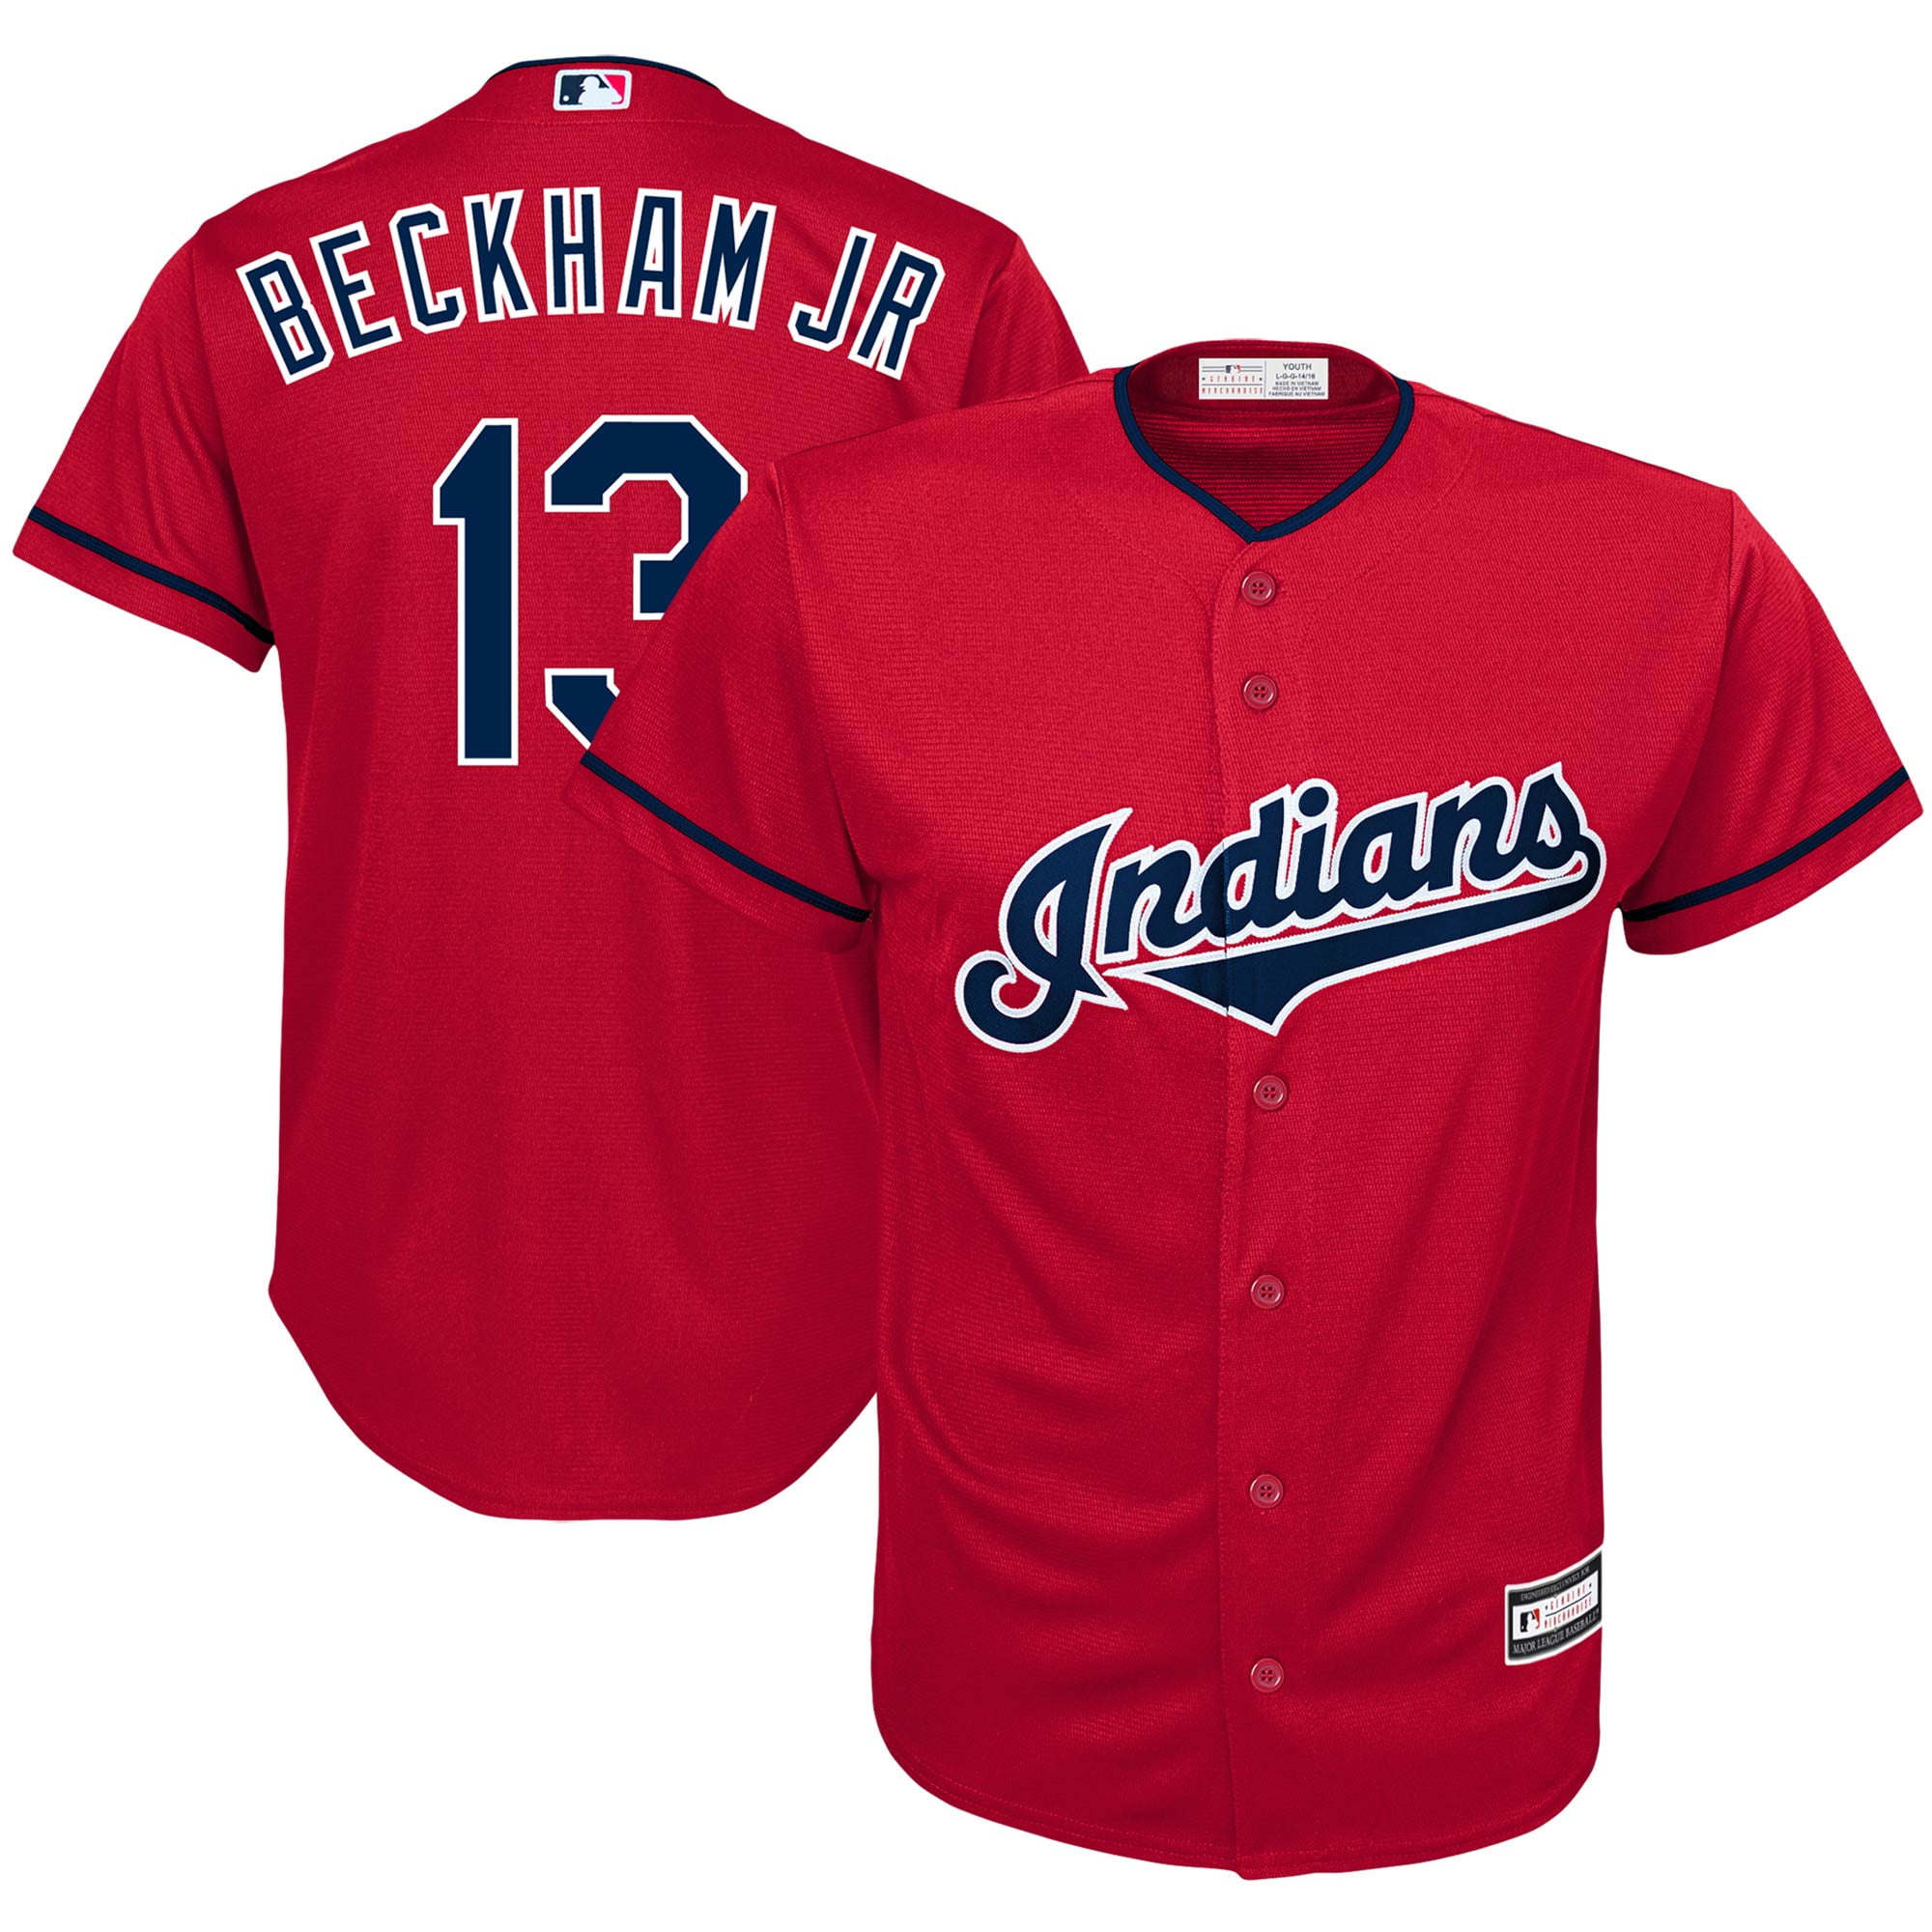 Odell Beckham Jr Cleveland Indians 